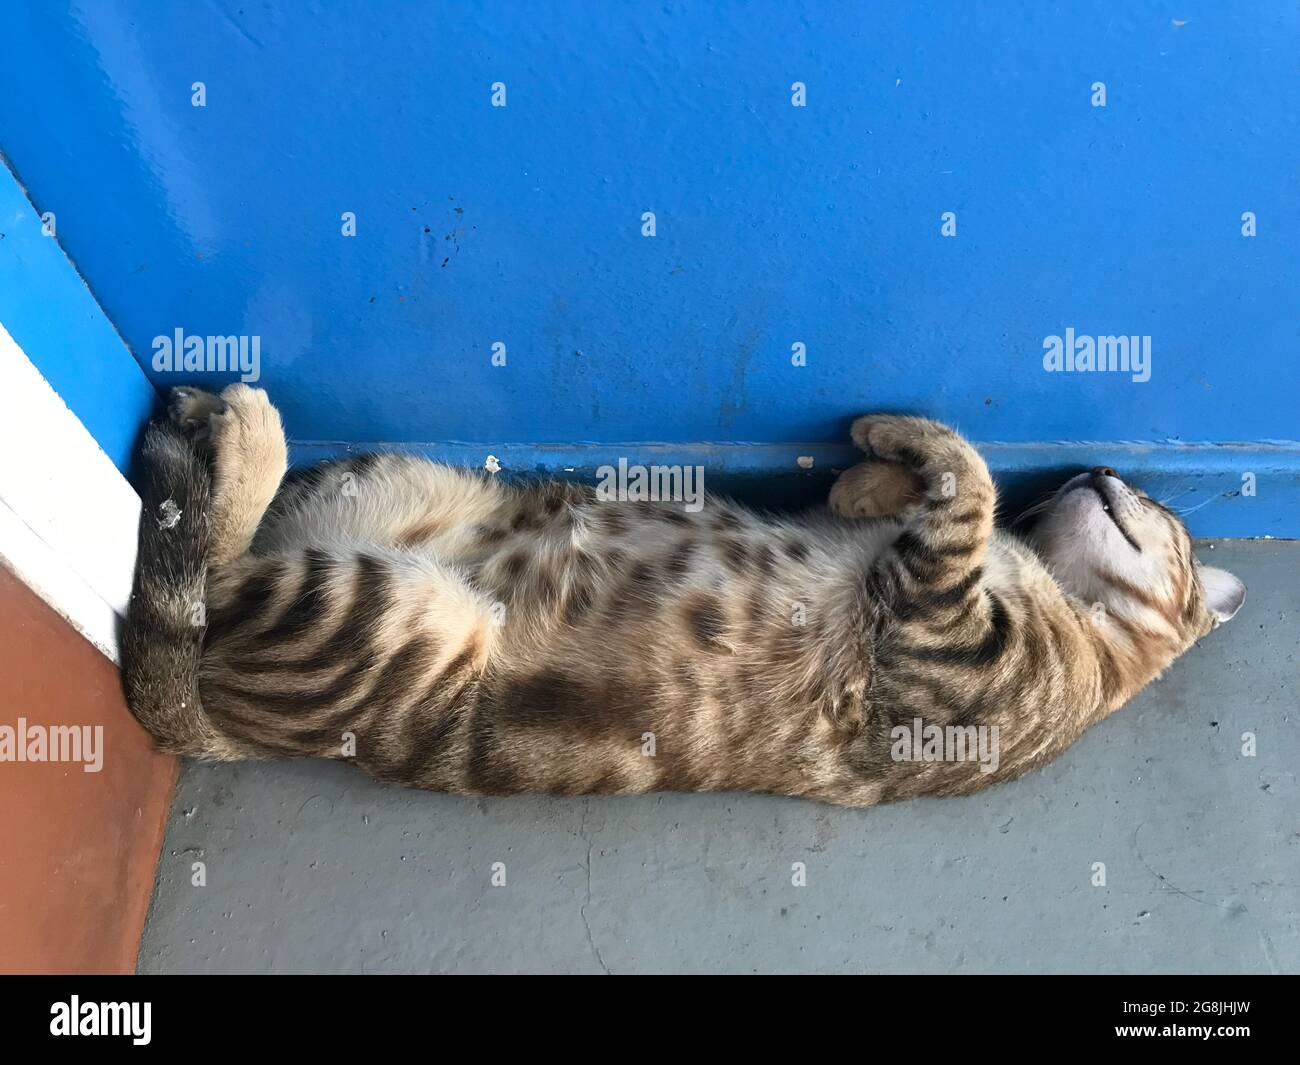 Katze schläft auf dem Kopf nach unten beugen Schlafen hinter Tür Eckseite  kann gequetscht werden Stockfotografie - Alamy